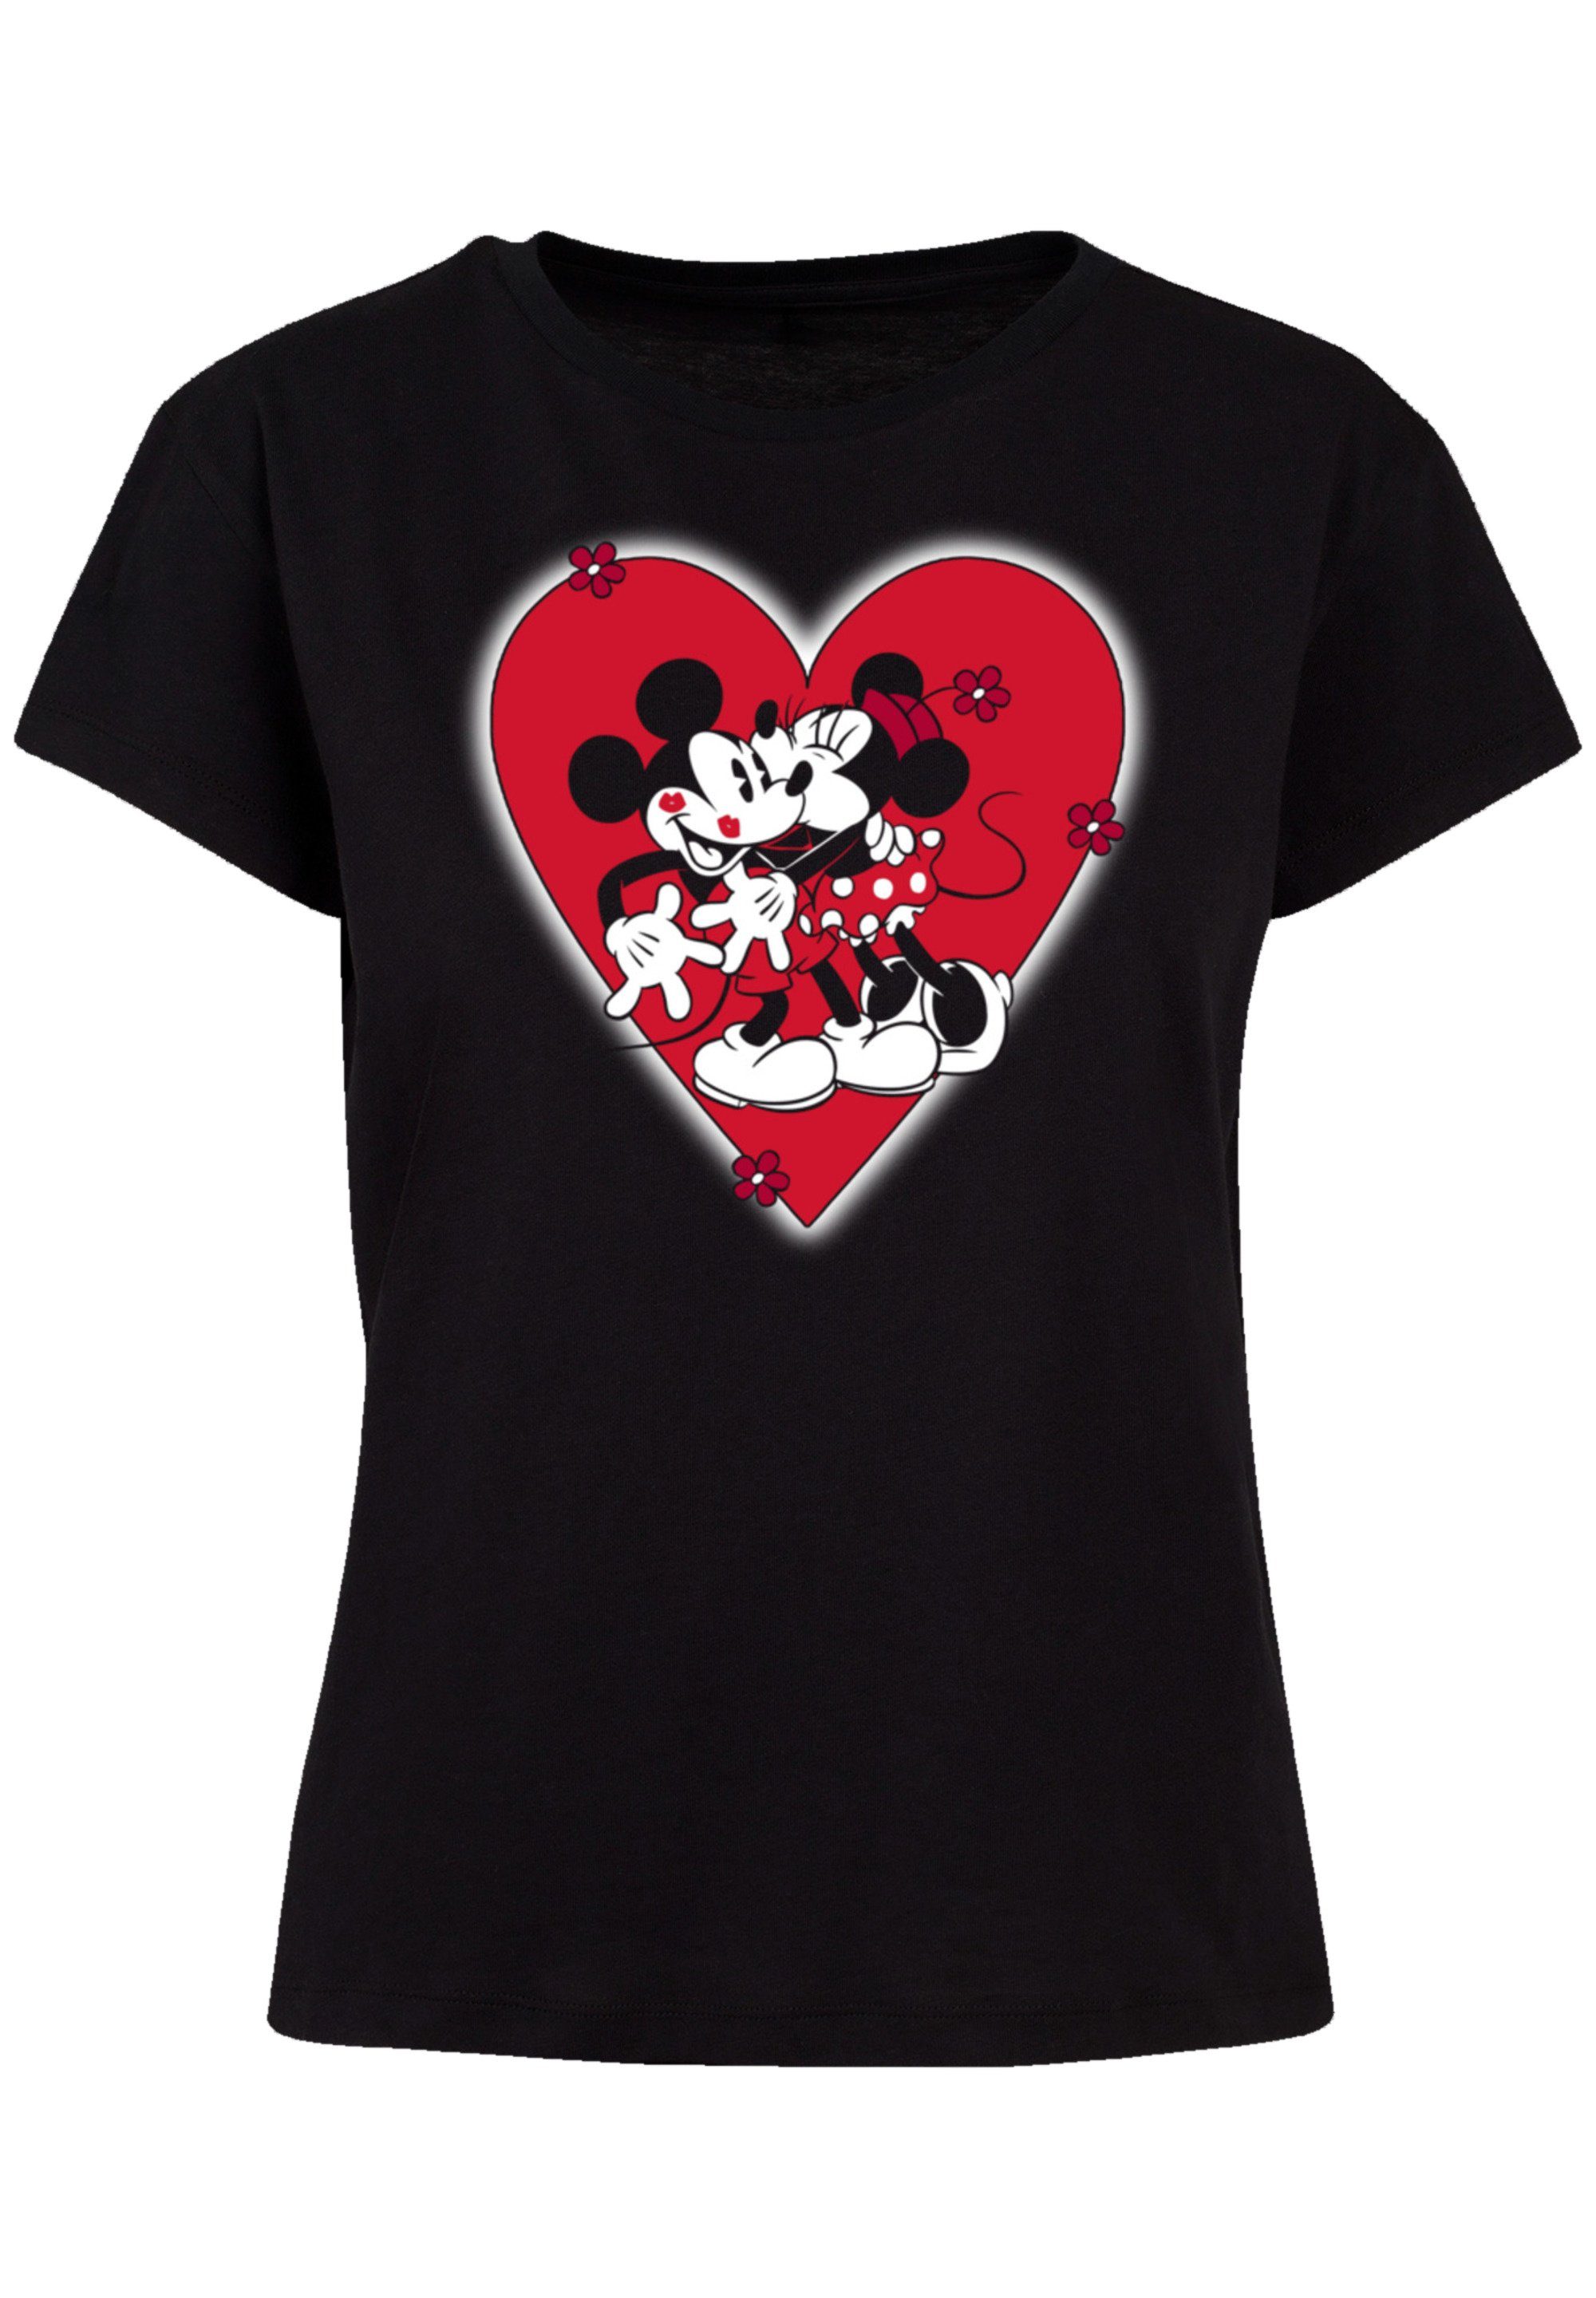 Perfekte T-Shirt Together Passform Qualität, Maus und Premium Verarbeitung F4NT4STIC hochwertige Disney Micky